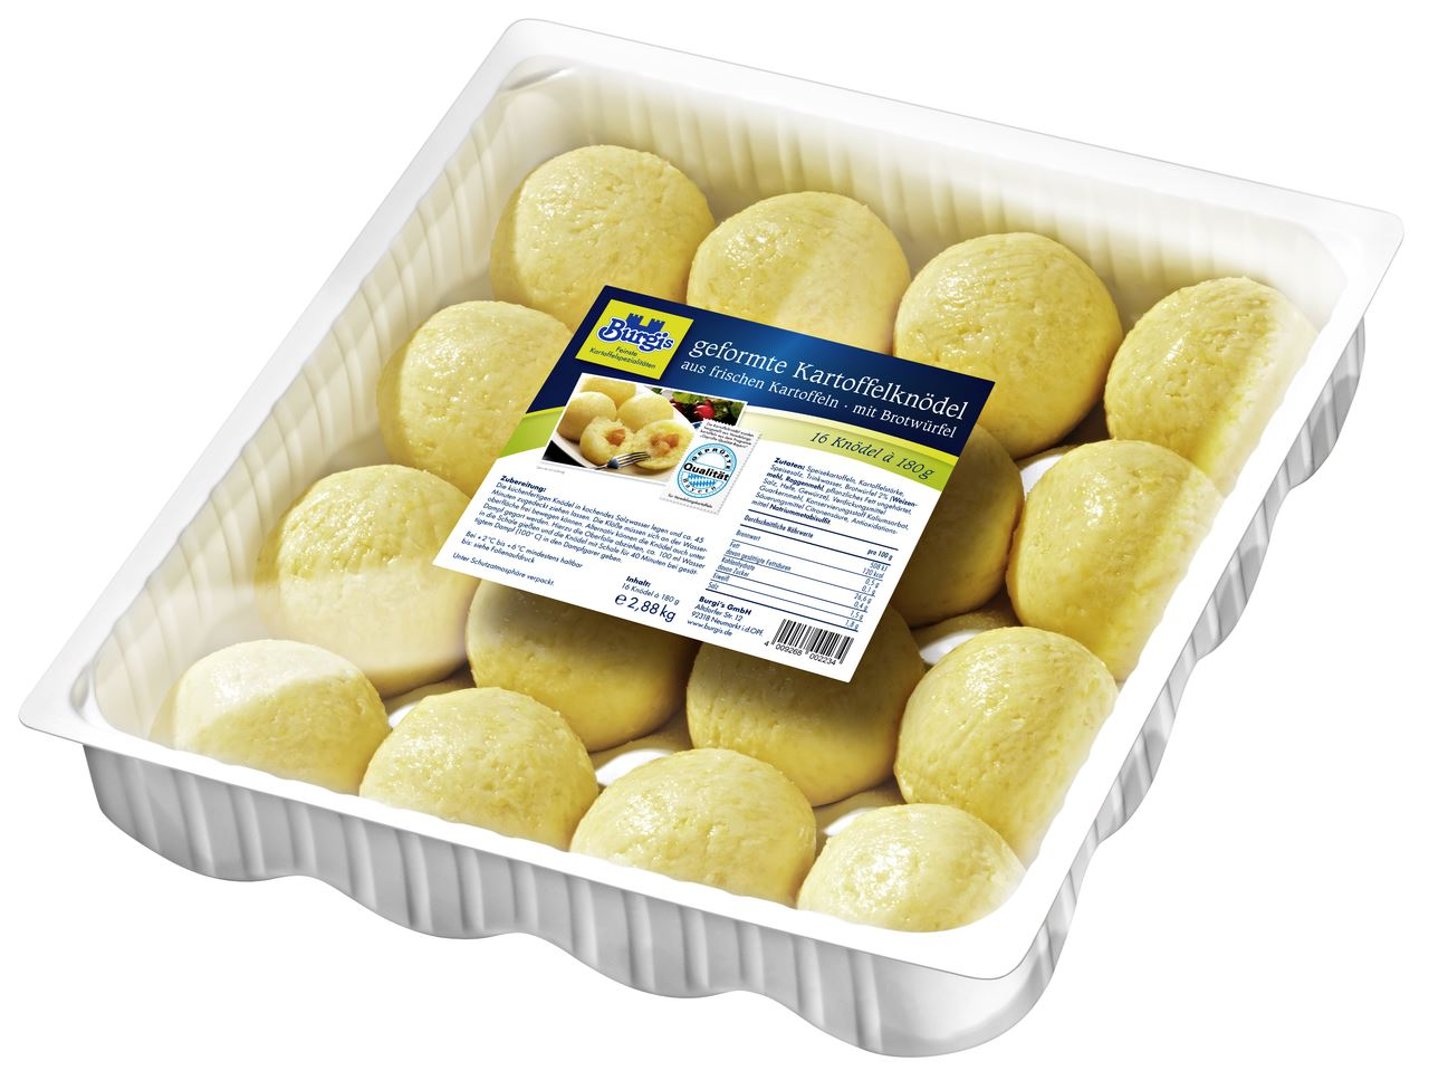 Burgis - Kartoffelknödel mit Croutons küchenfertig, 16 Stück à 180 g 2,88 kg Packung